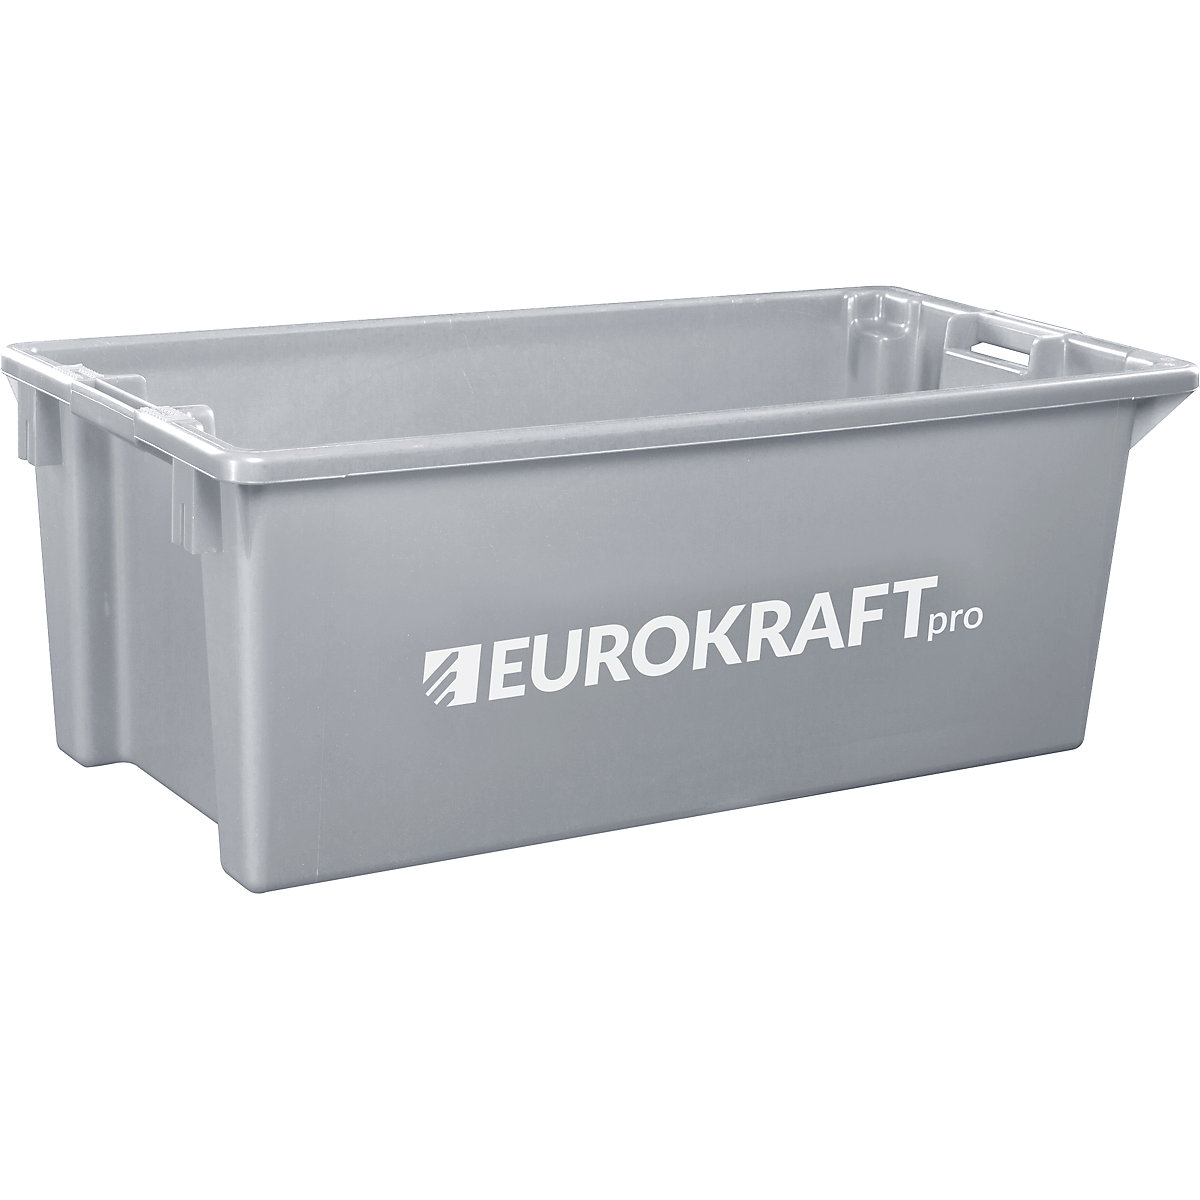 EUROKRAFTpro – Obrotowy pojemnik do ustawiania w stos z polipropylenu dopuszczonego do kontaktu z żywnością, poj. 13 l, opak. 4 szt., ścianki i dno zamknięte, szare